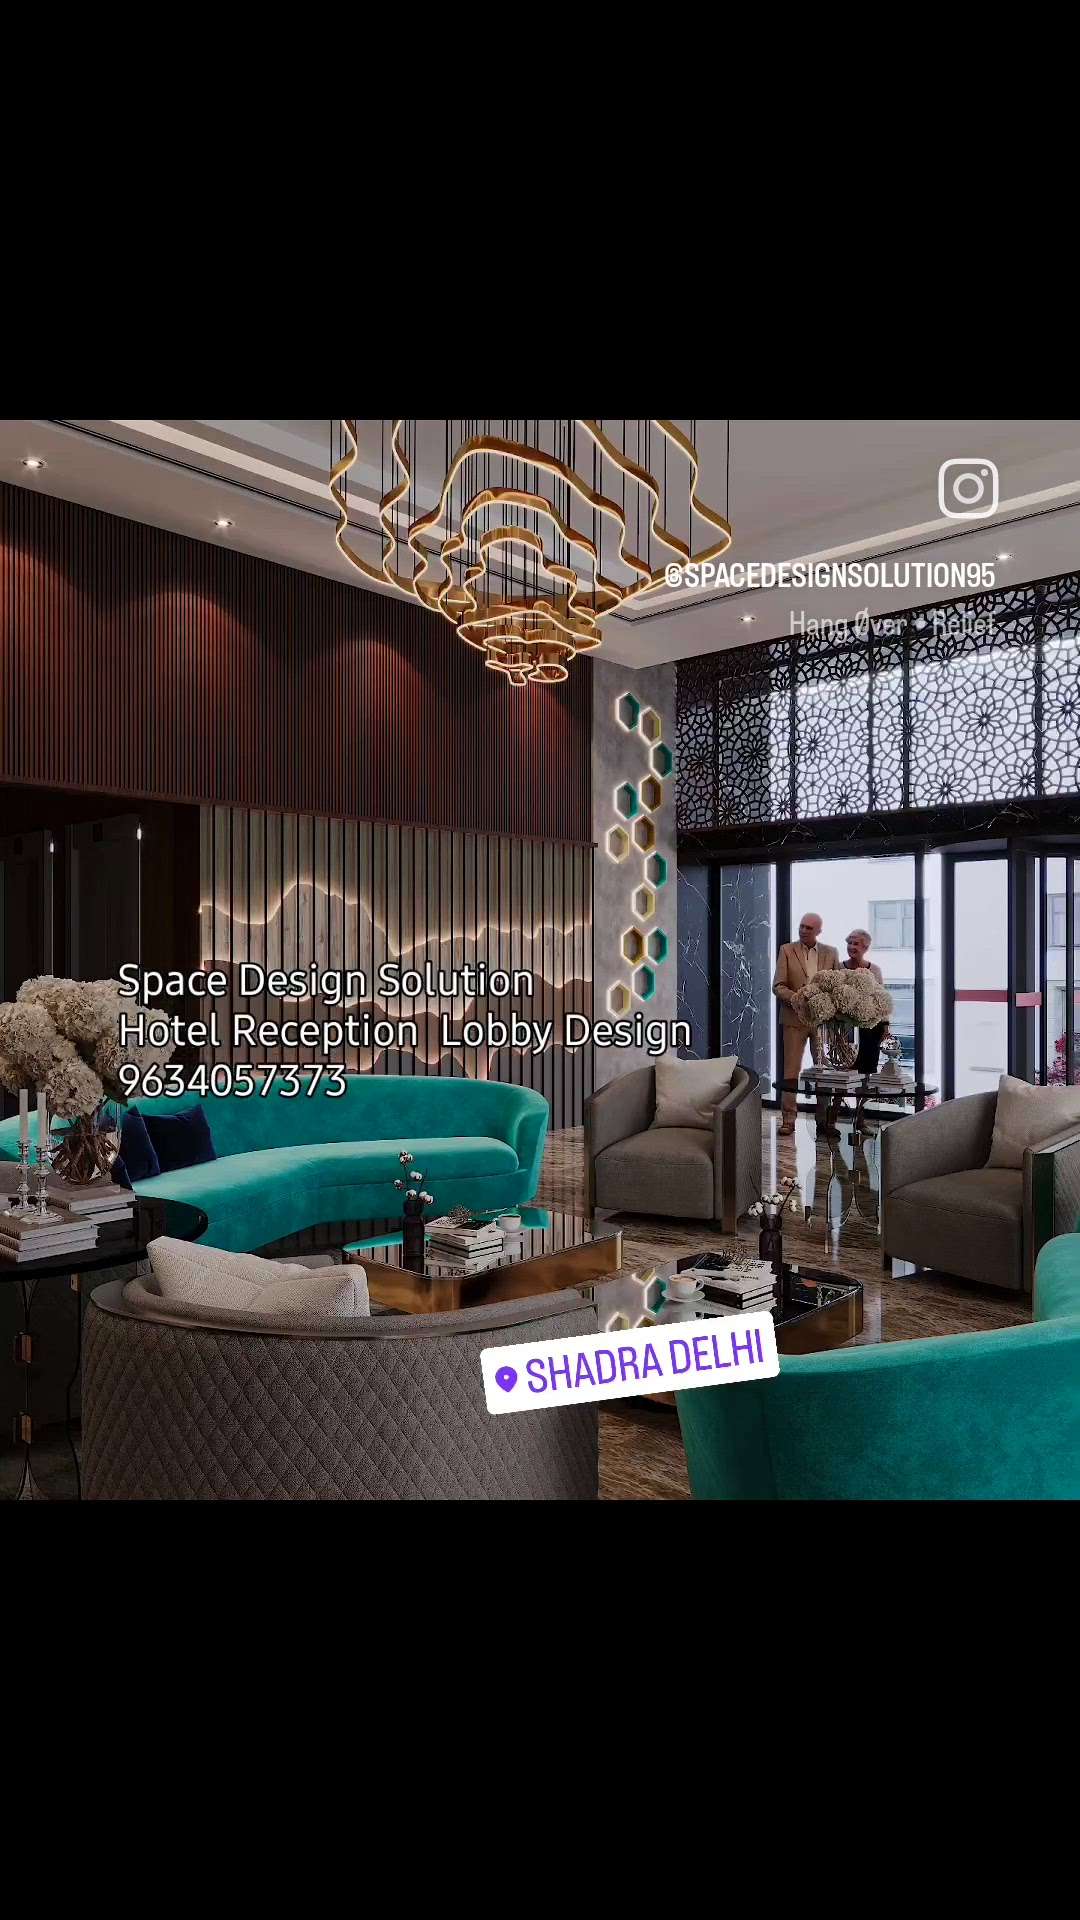 #hotel # Reception Lobby #interiordesign #modern #Interior #luxuryinterior #arcitecture #Space #design #solution 
www.spacedesignsolution.com 
9634057373